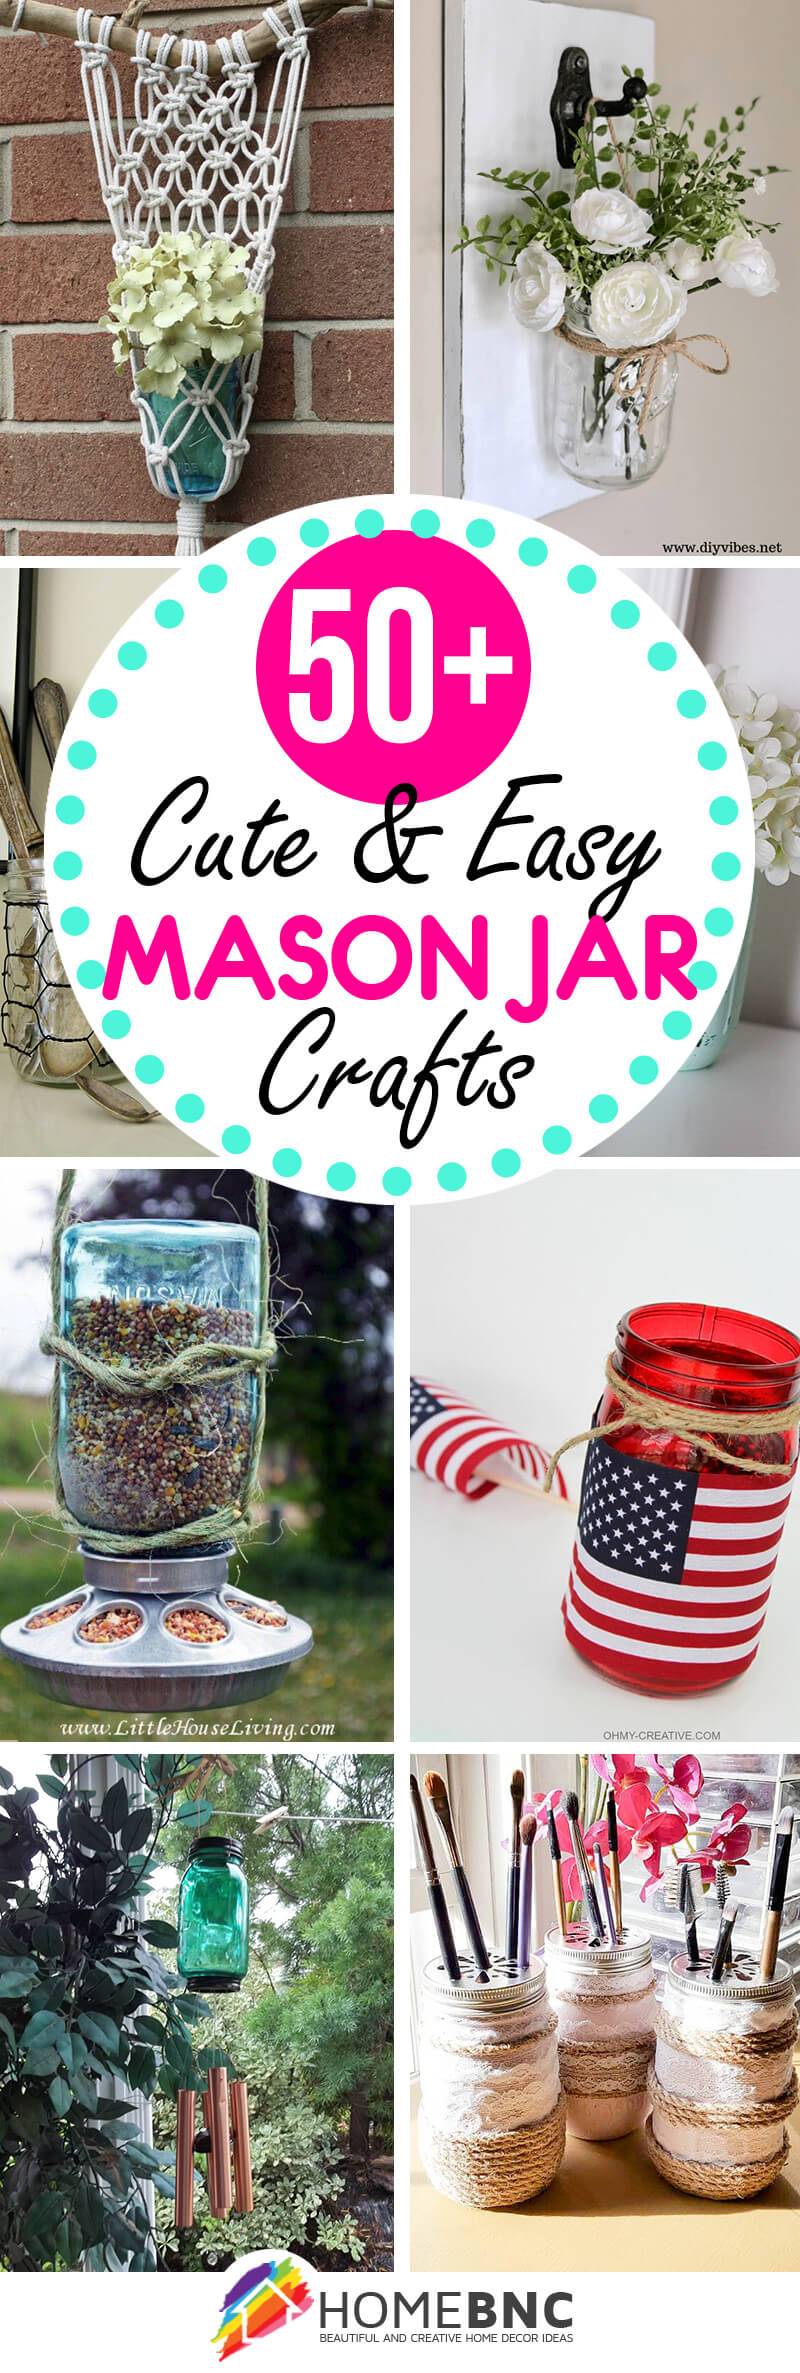 Mason jar craft – 10 pretty ideas to make